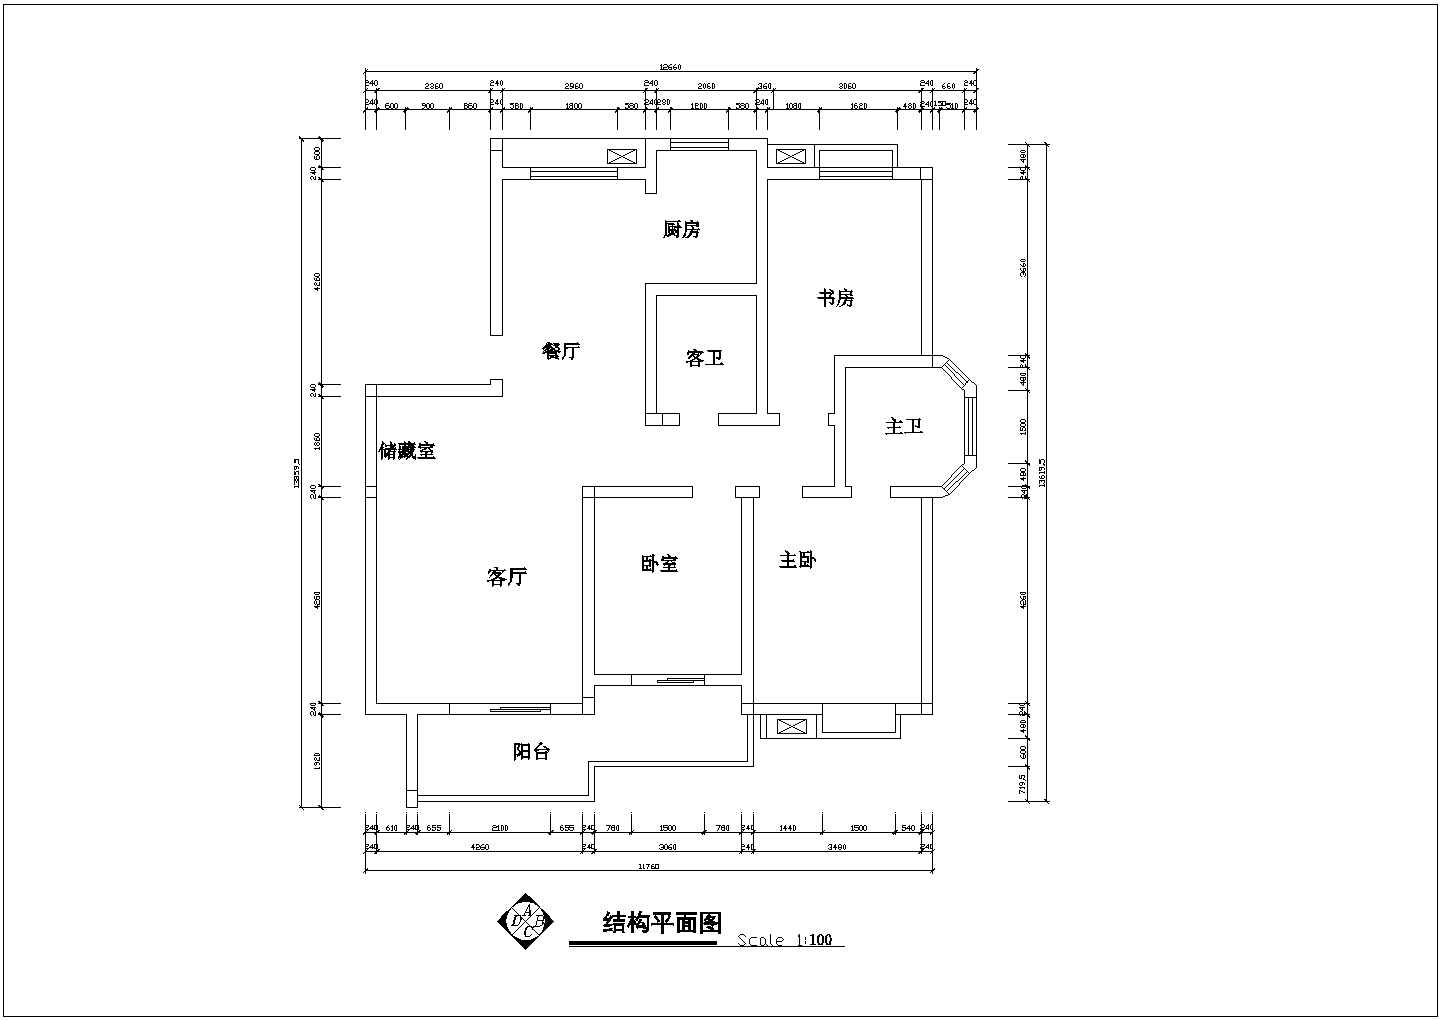 套房户型设计施工图【3室2厅2卫1阳台1储藏室、长13.8595米、宽12.66米】